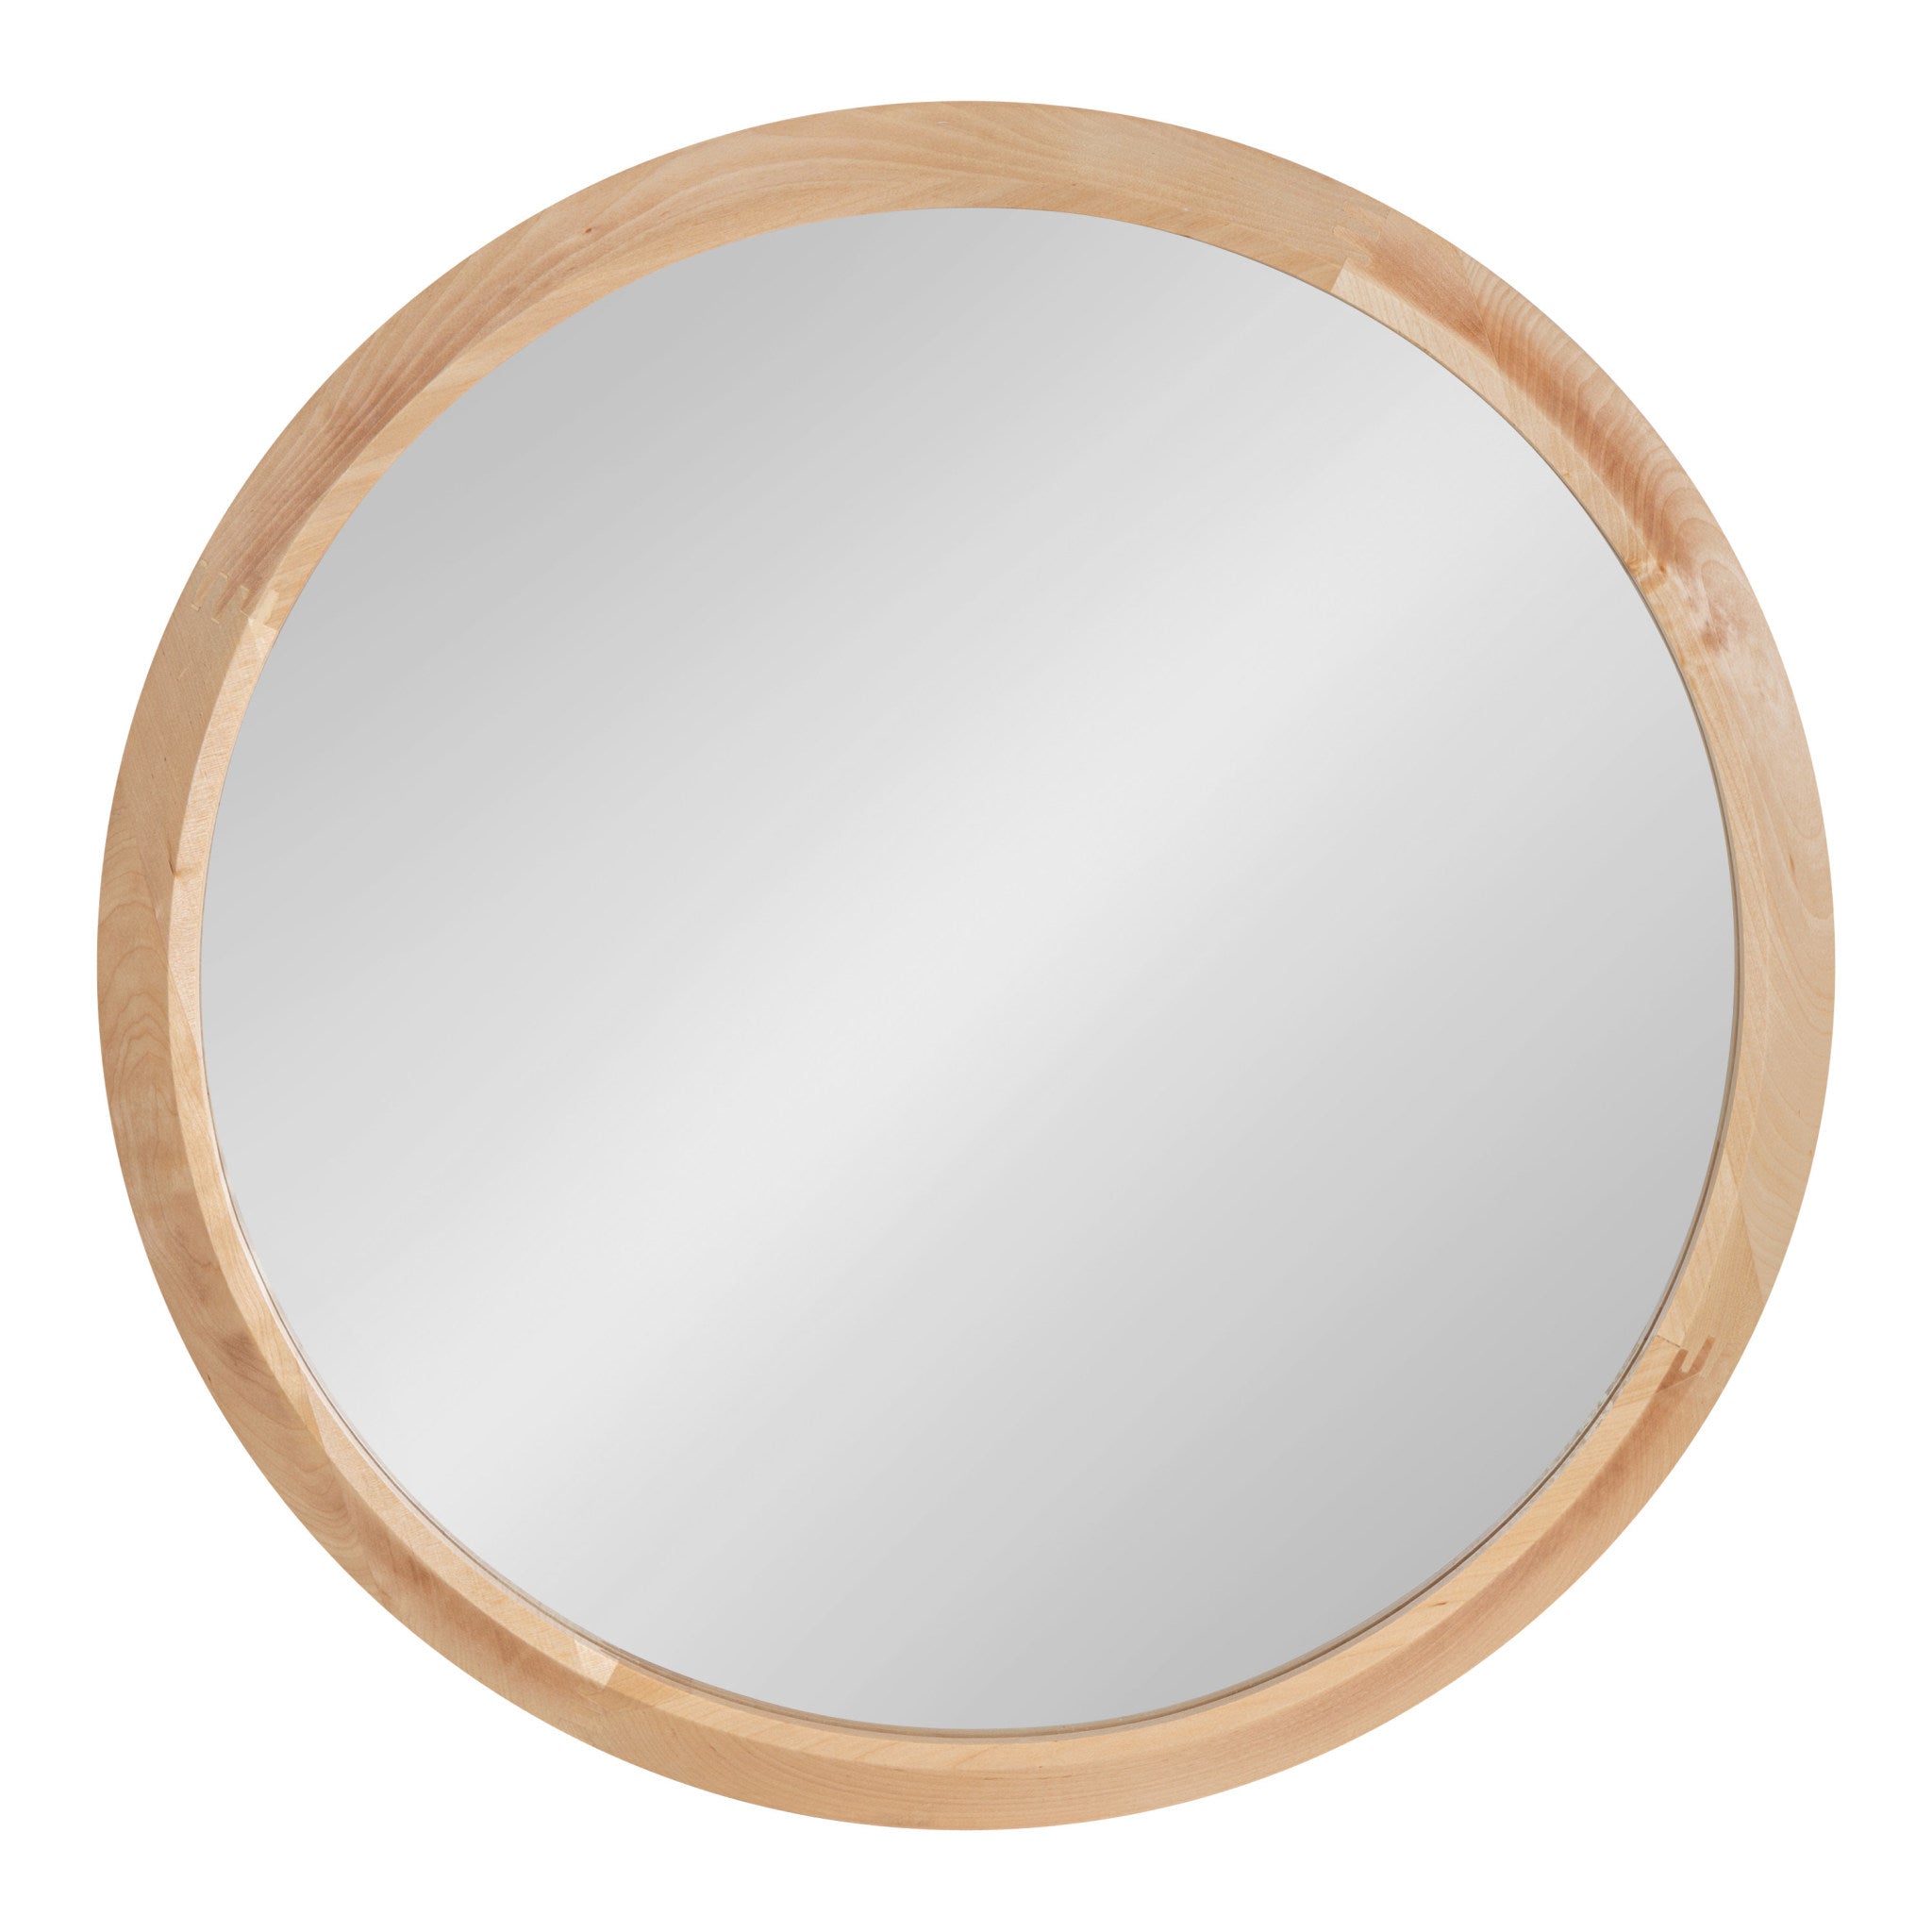 Uldrich Wood Framed Mirror